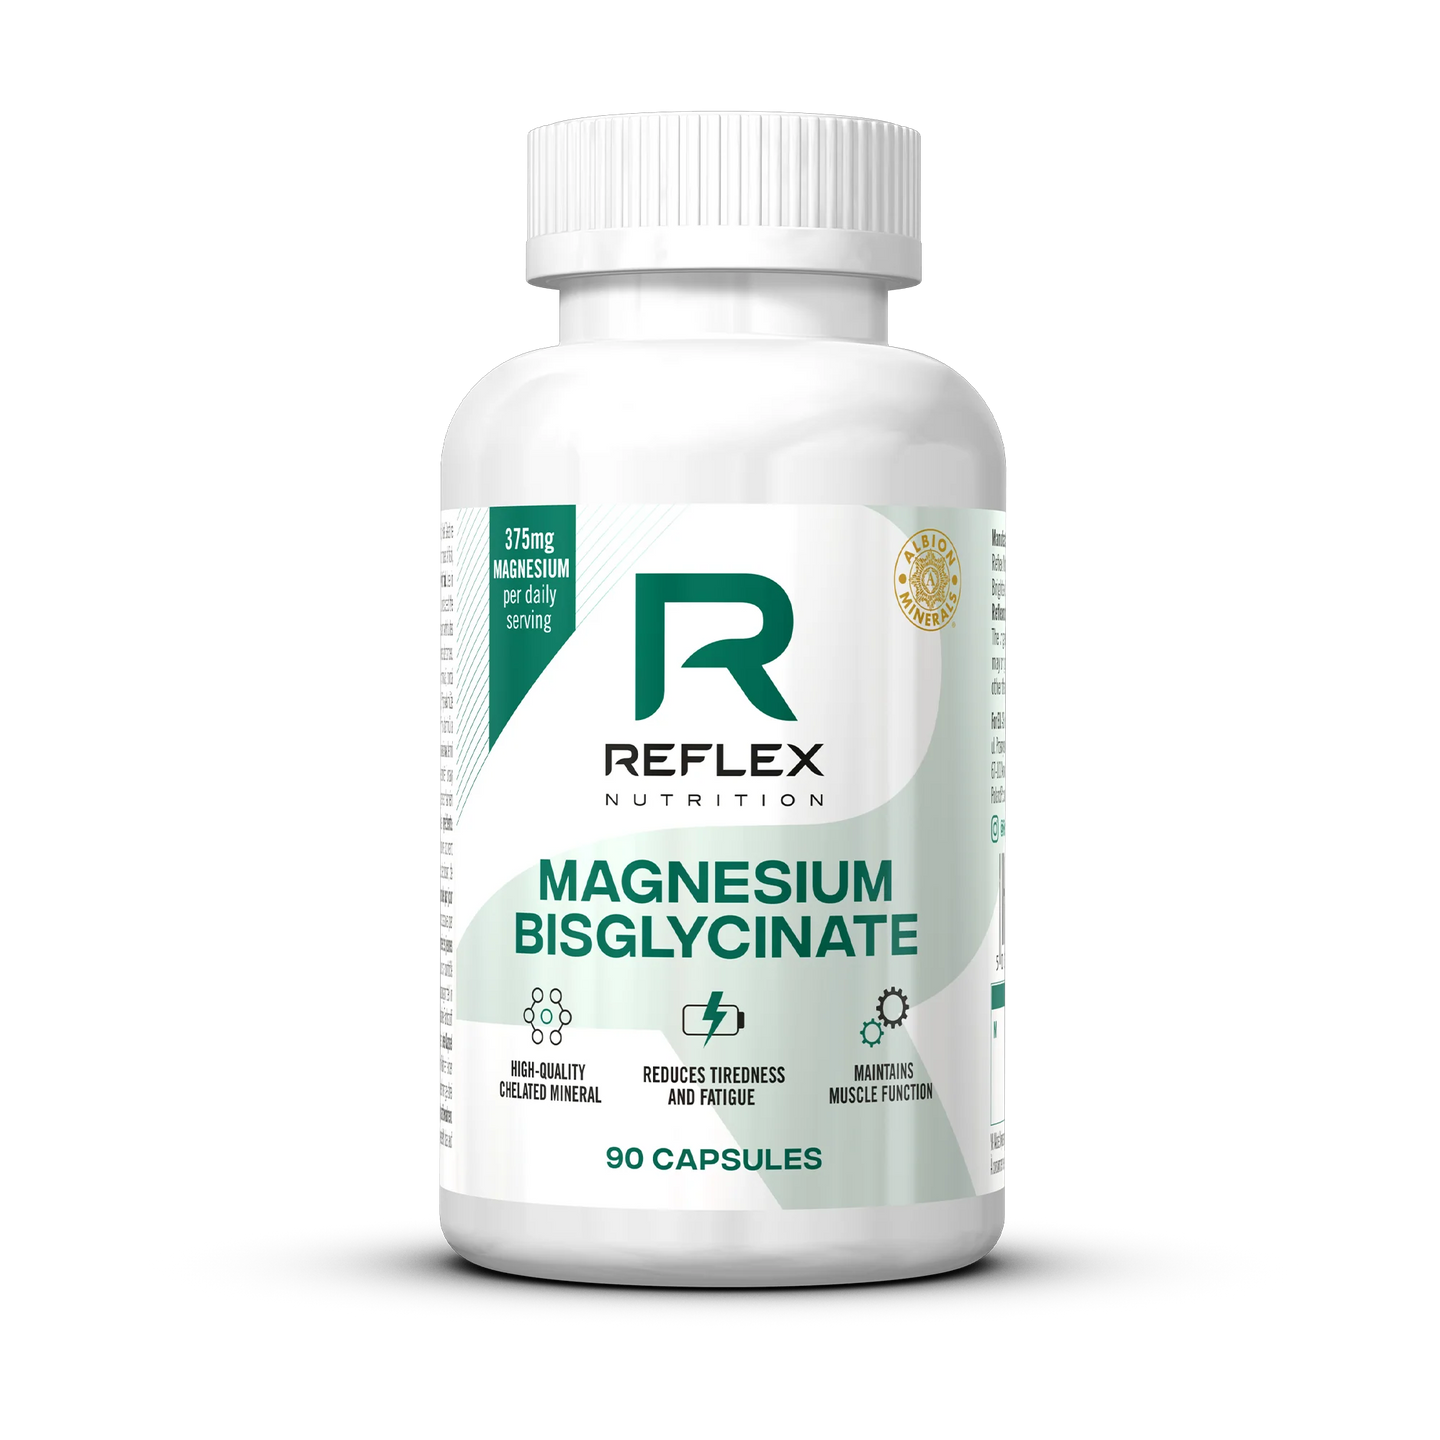 Reflex Nutrition Magnesium Bisglycinate - 90 Capsules